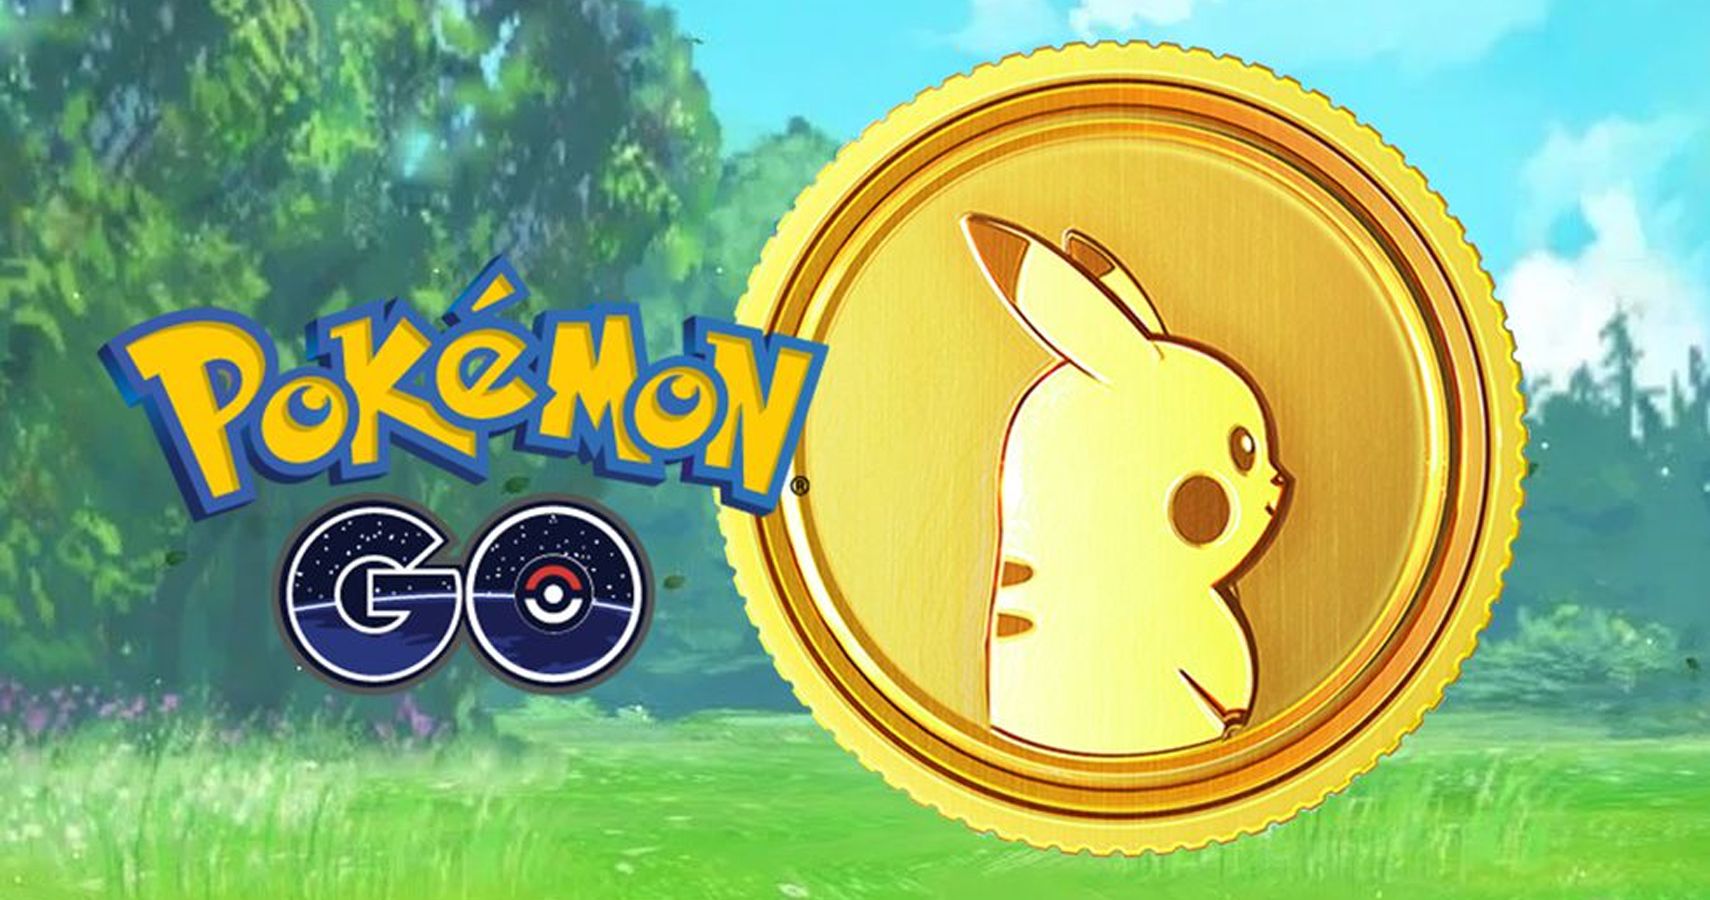 Pokémon Go Revenue Has Surpassed $36 Billion Since Launch